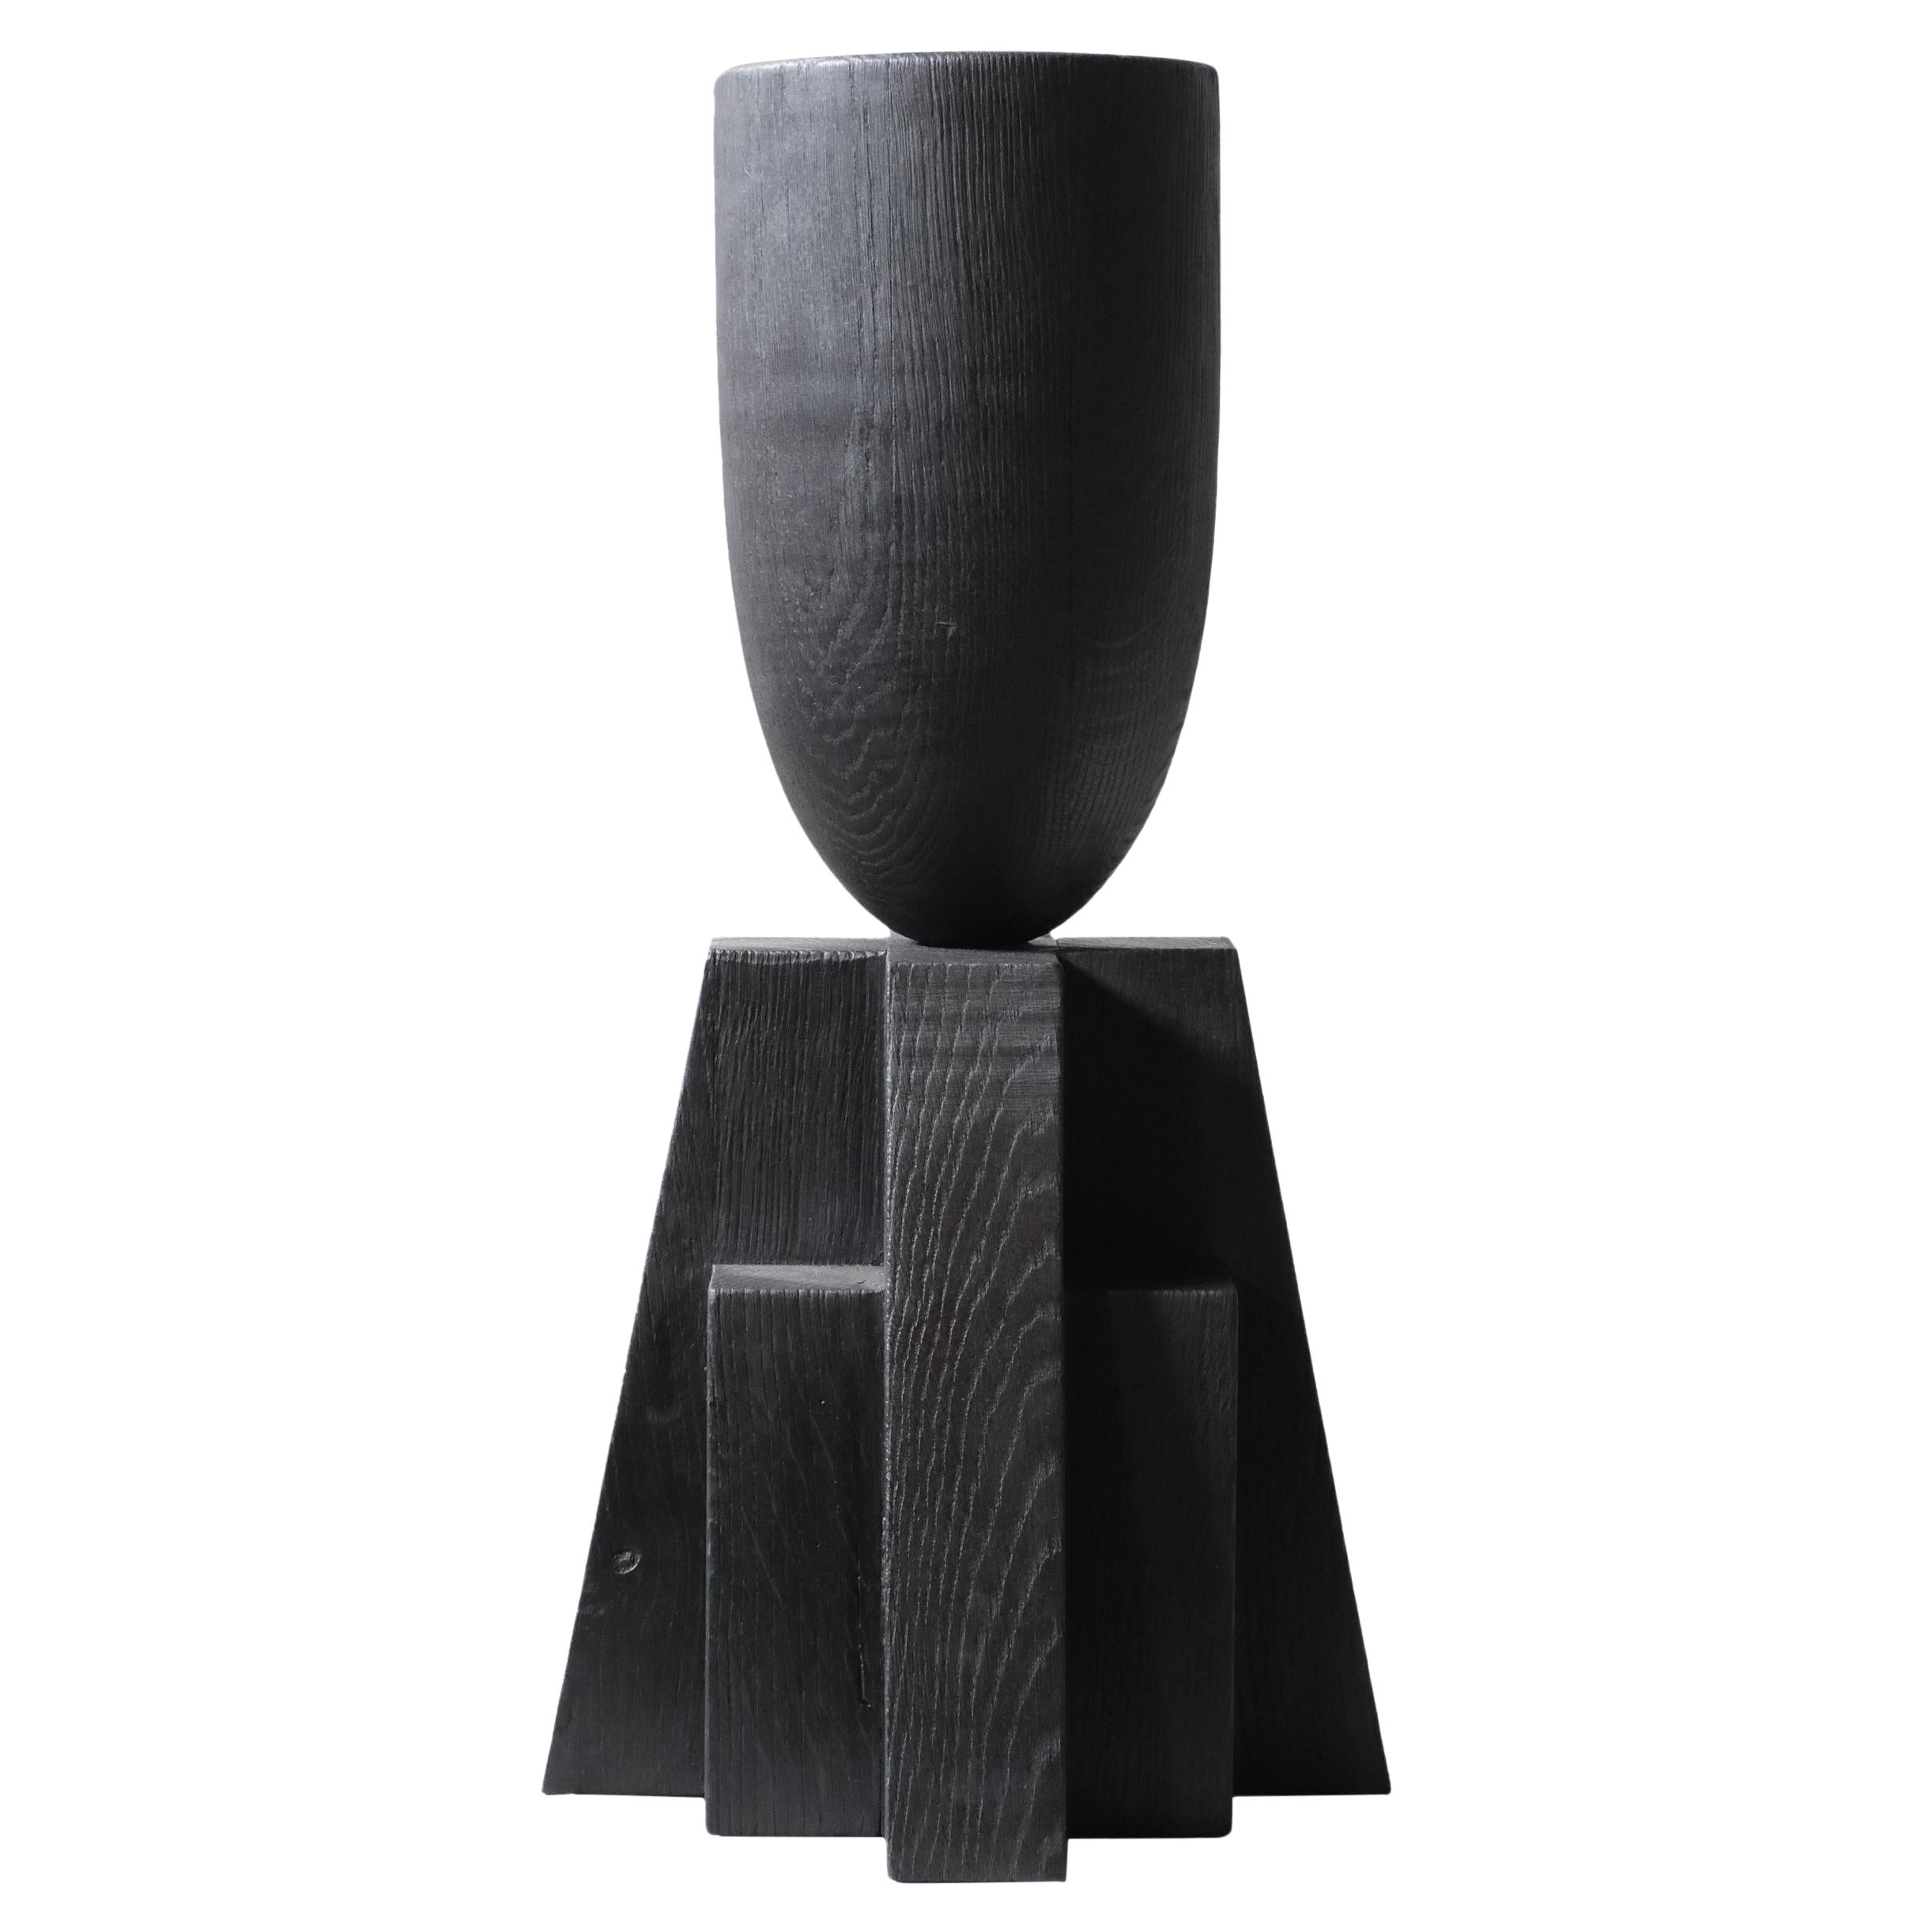 Babel-Vase von Arno Declercq